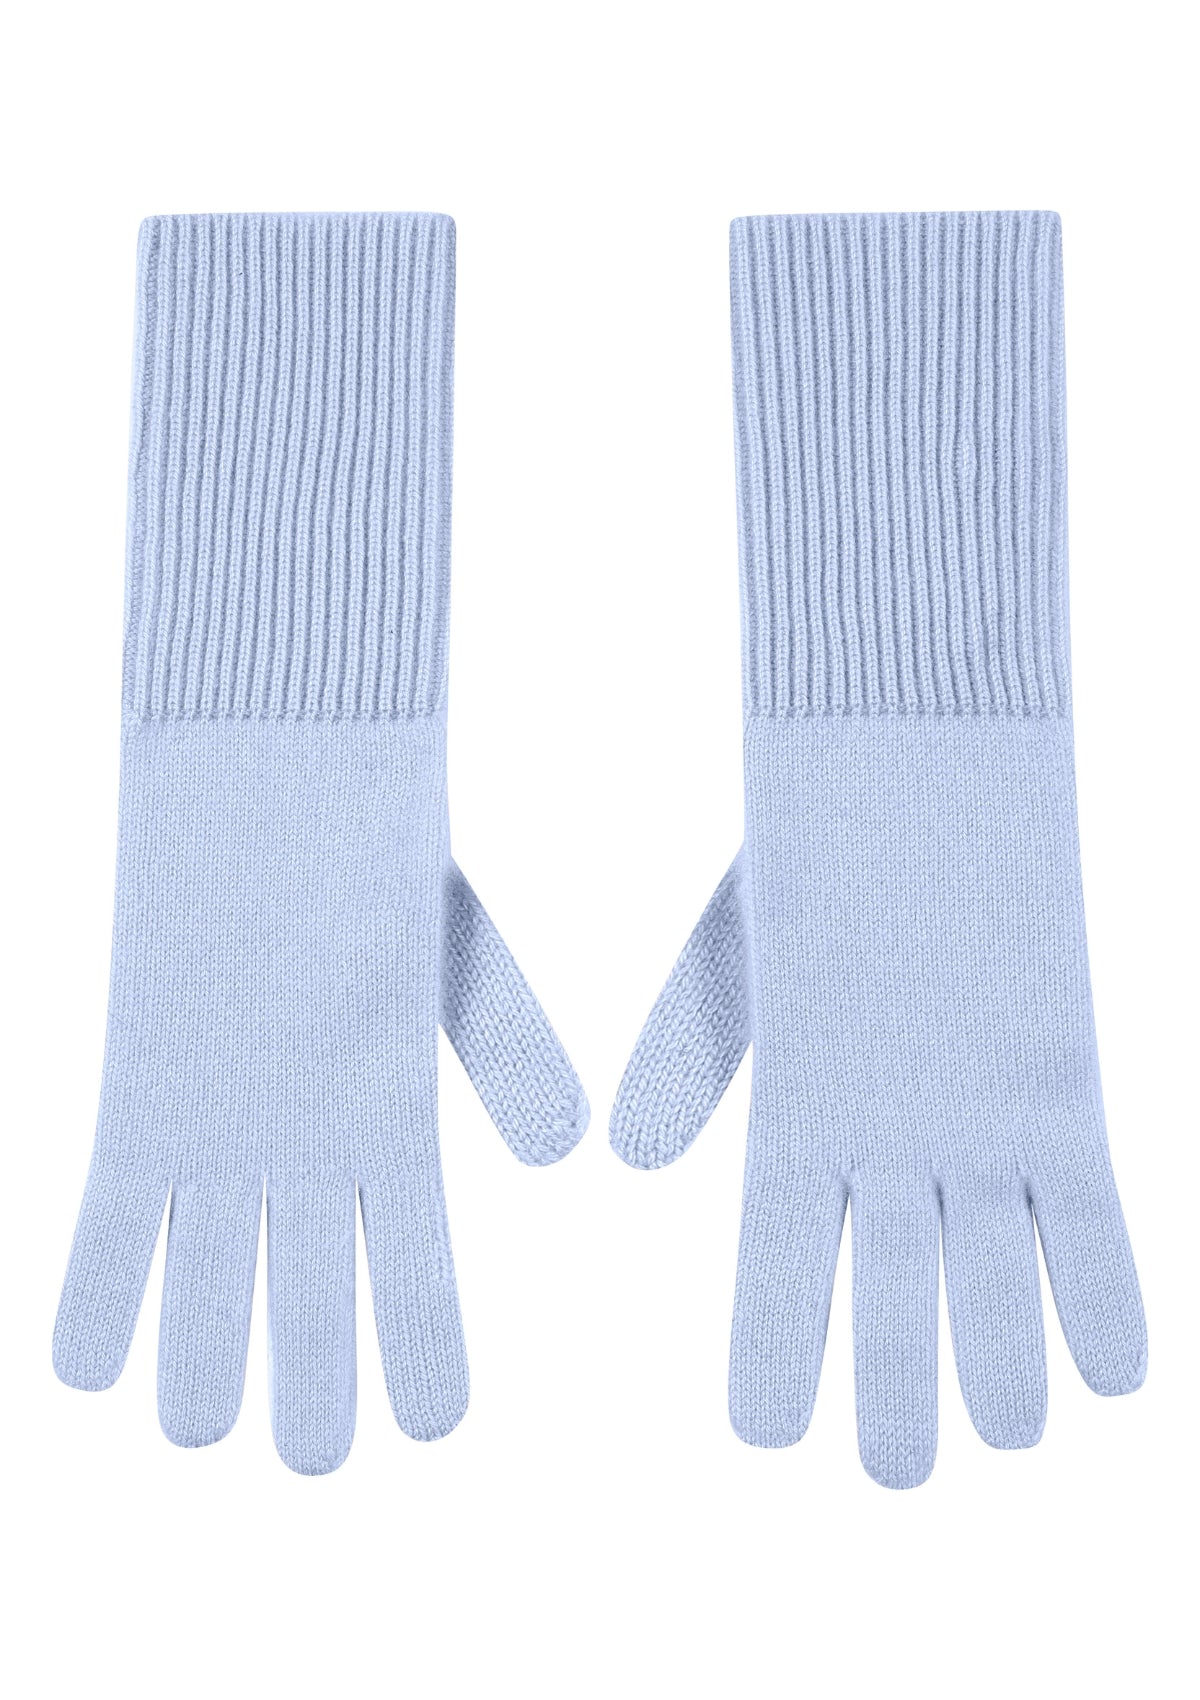 Cashmere Glove in Whisper Blue